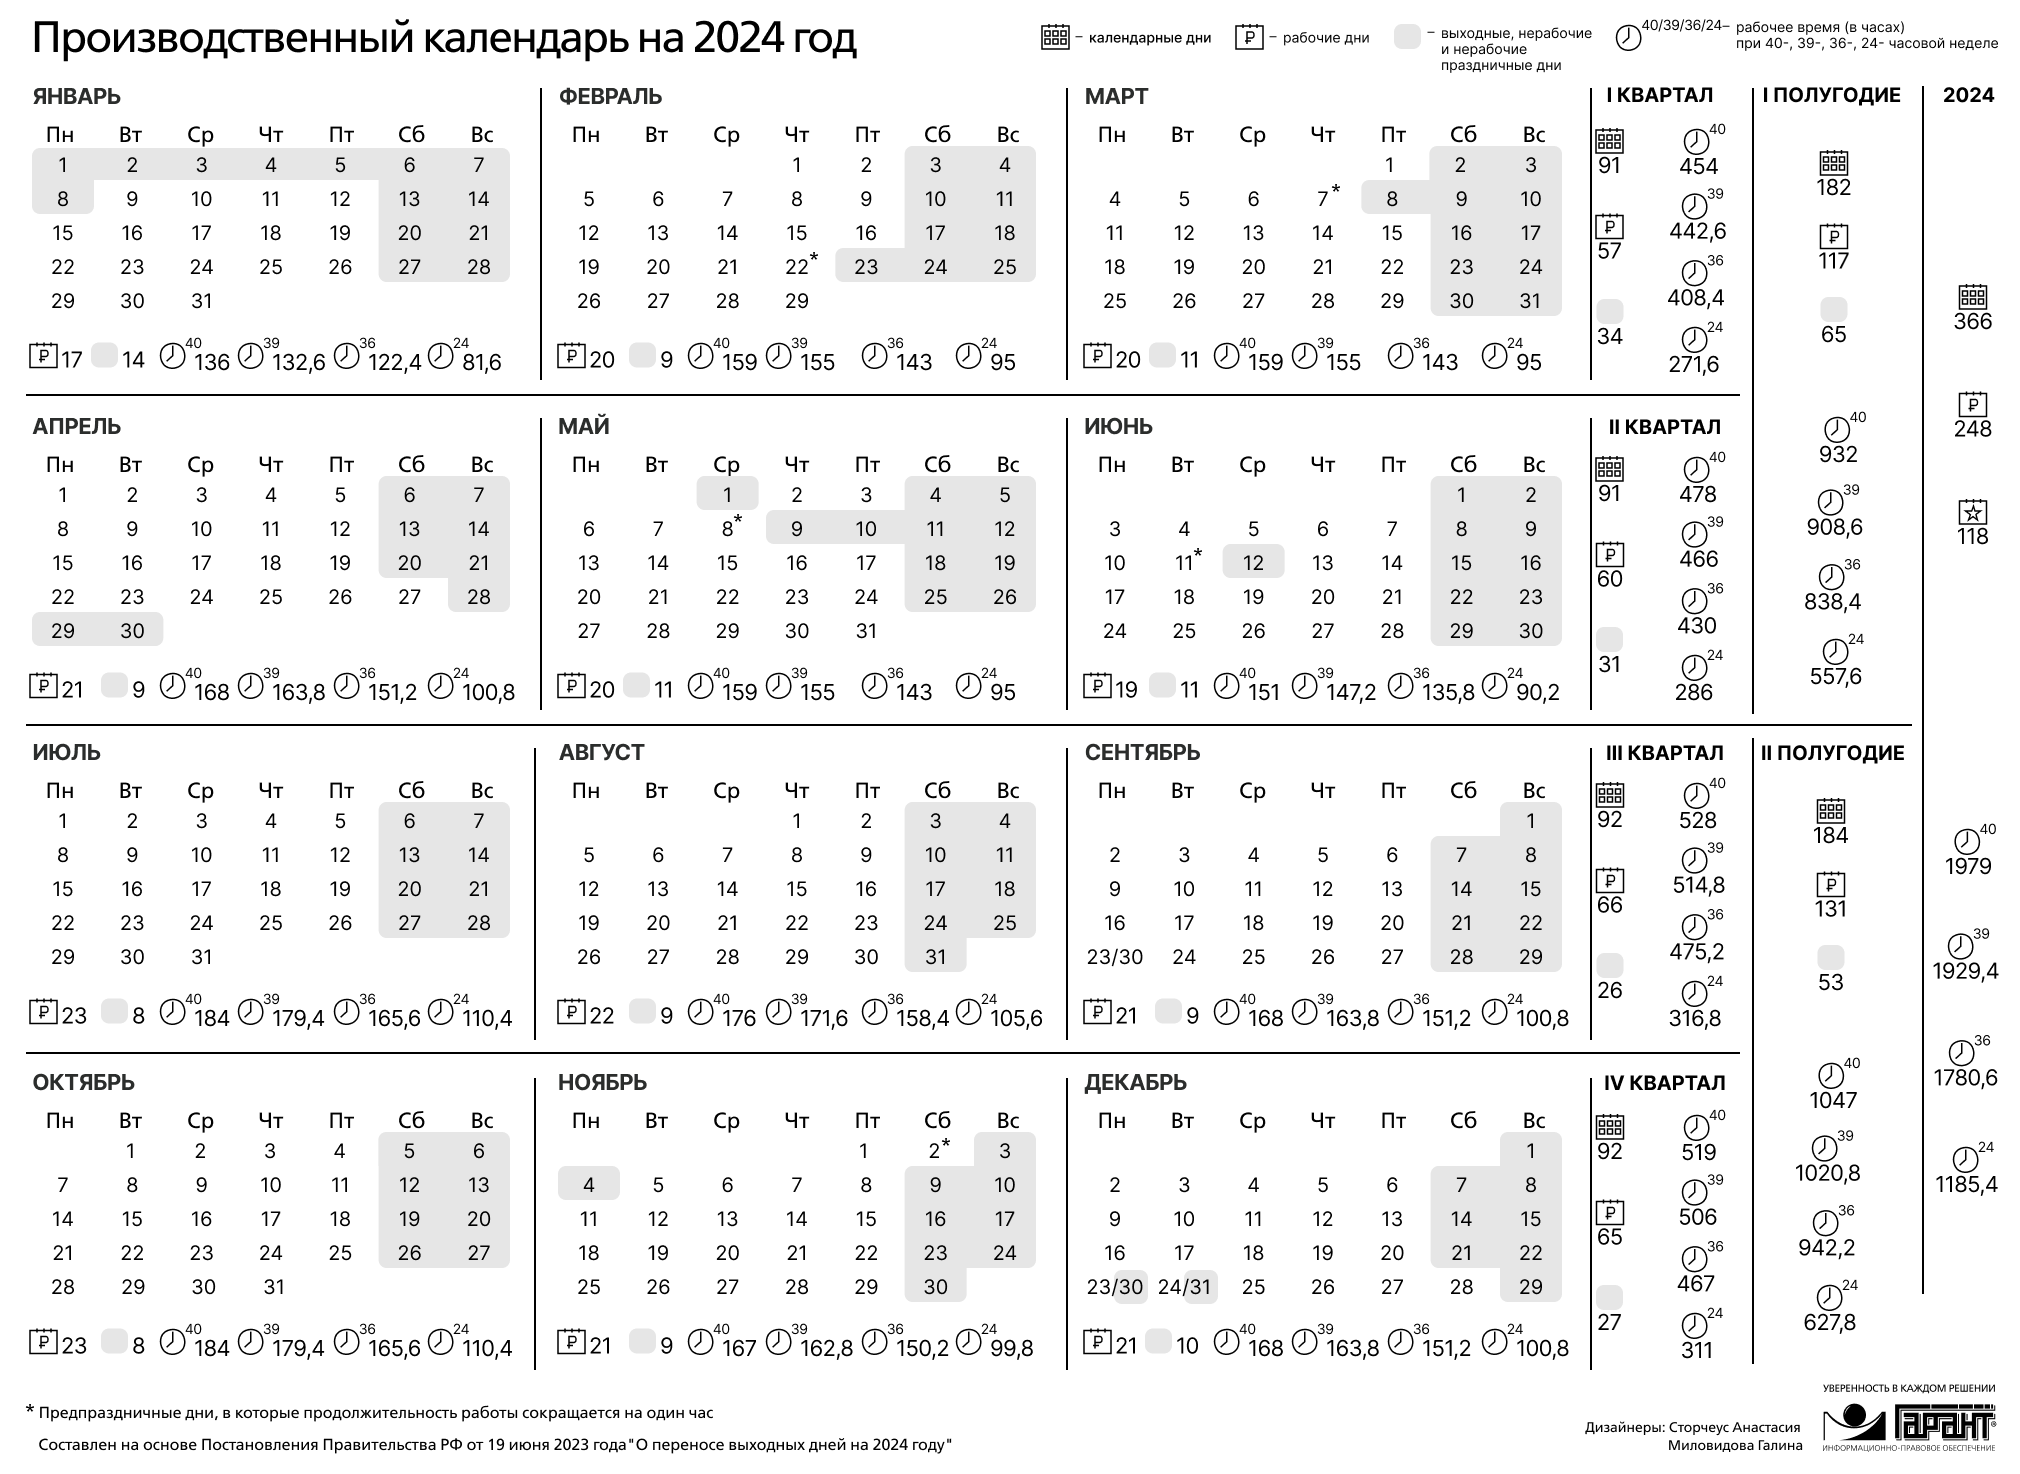 Праздничные дни 2024 года в России производственный календарь. Календарь на 2024 год с праздниками и выходными производственный РФ. Производственный календарь на 2024 го од. Зводственный календарь на 2024. Календарь праздников рабочих дней на 2024 год